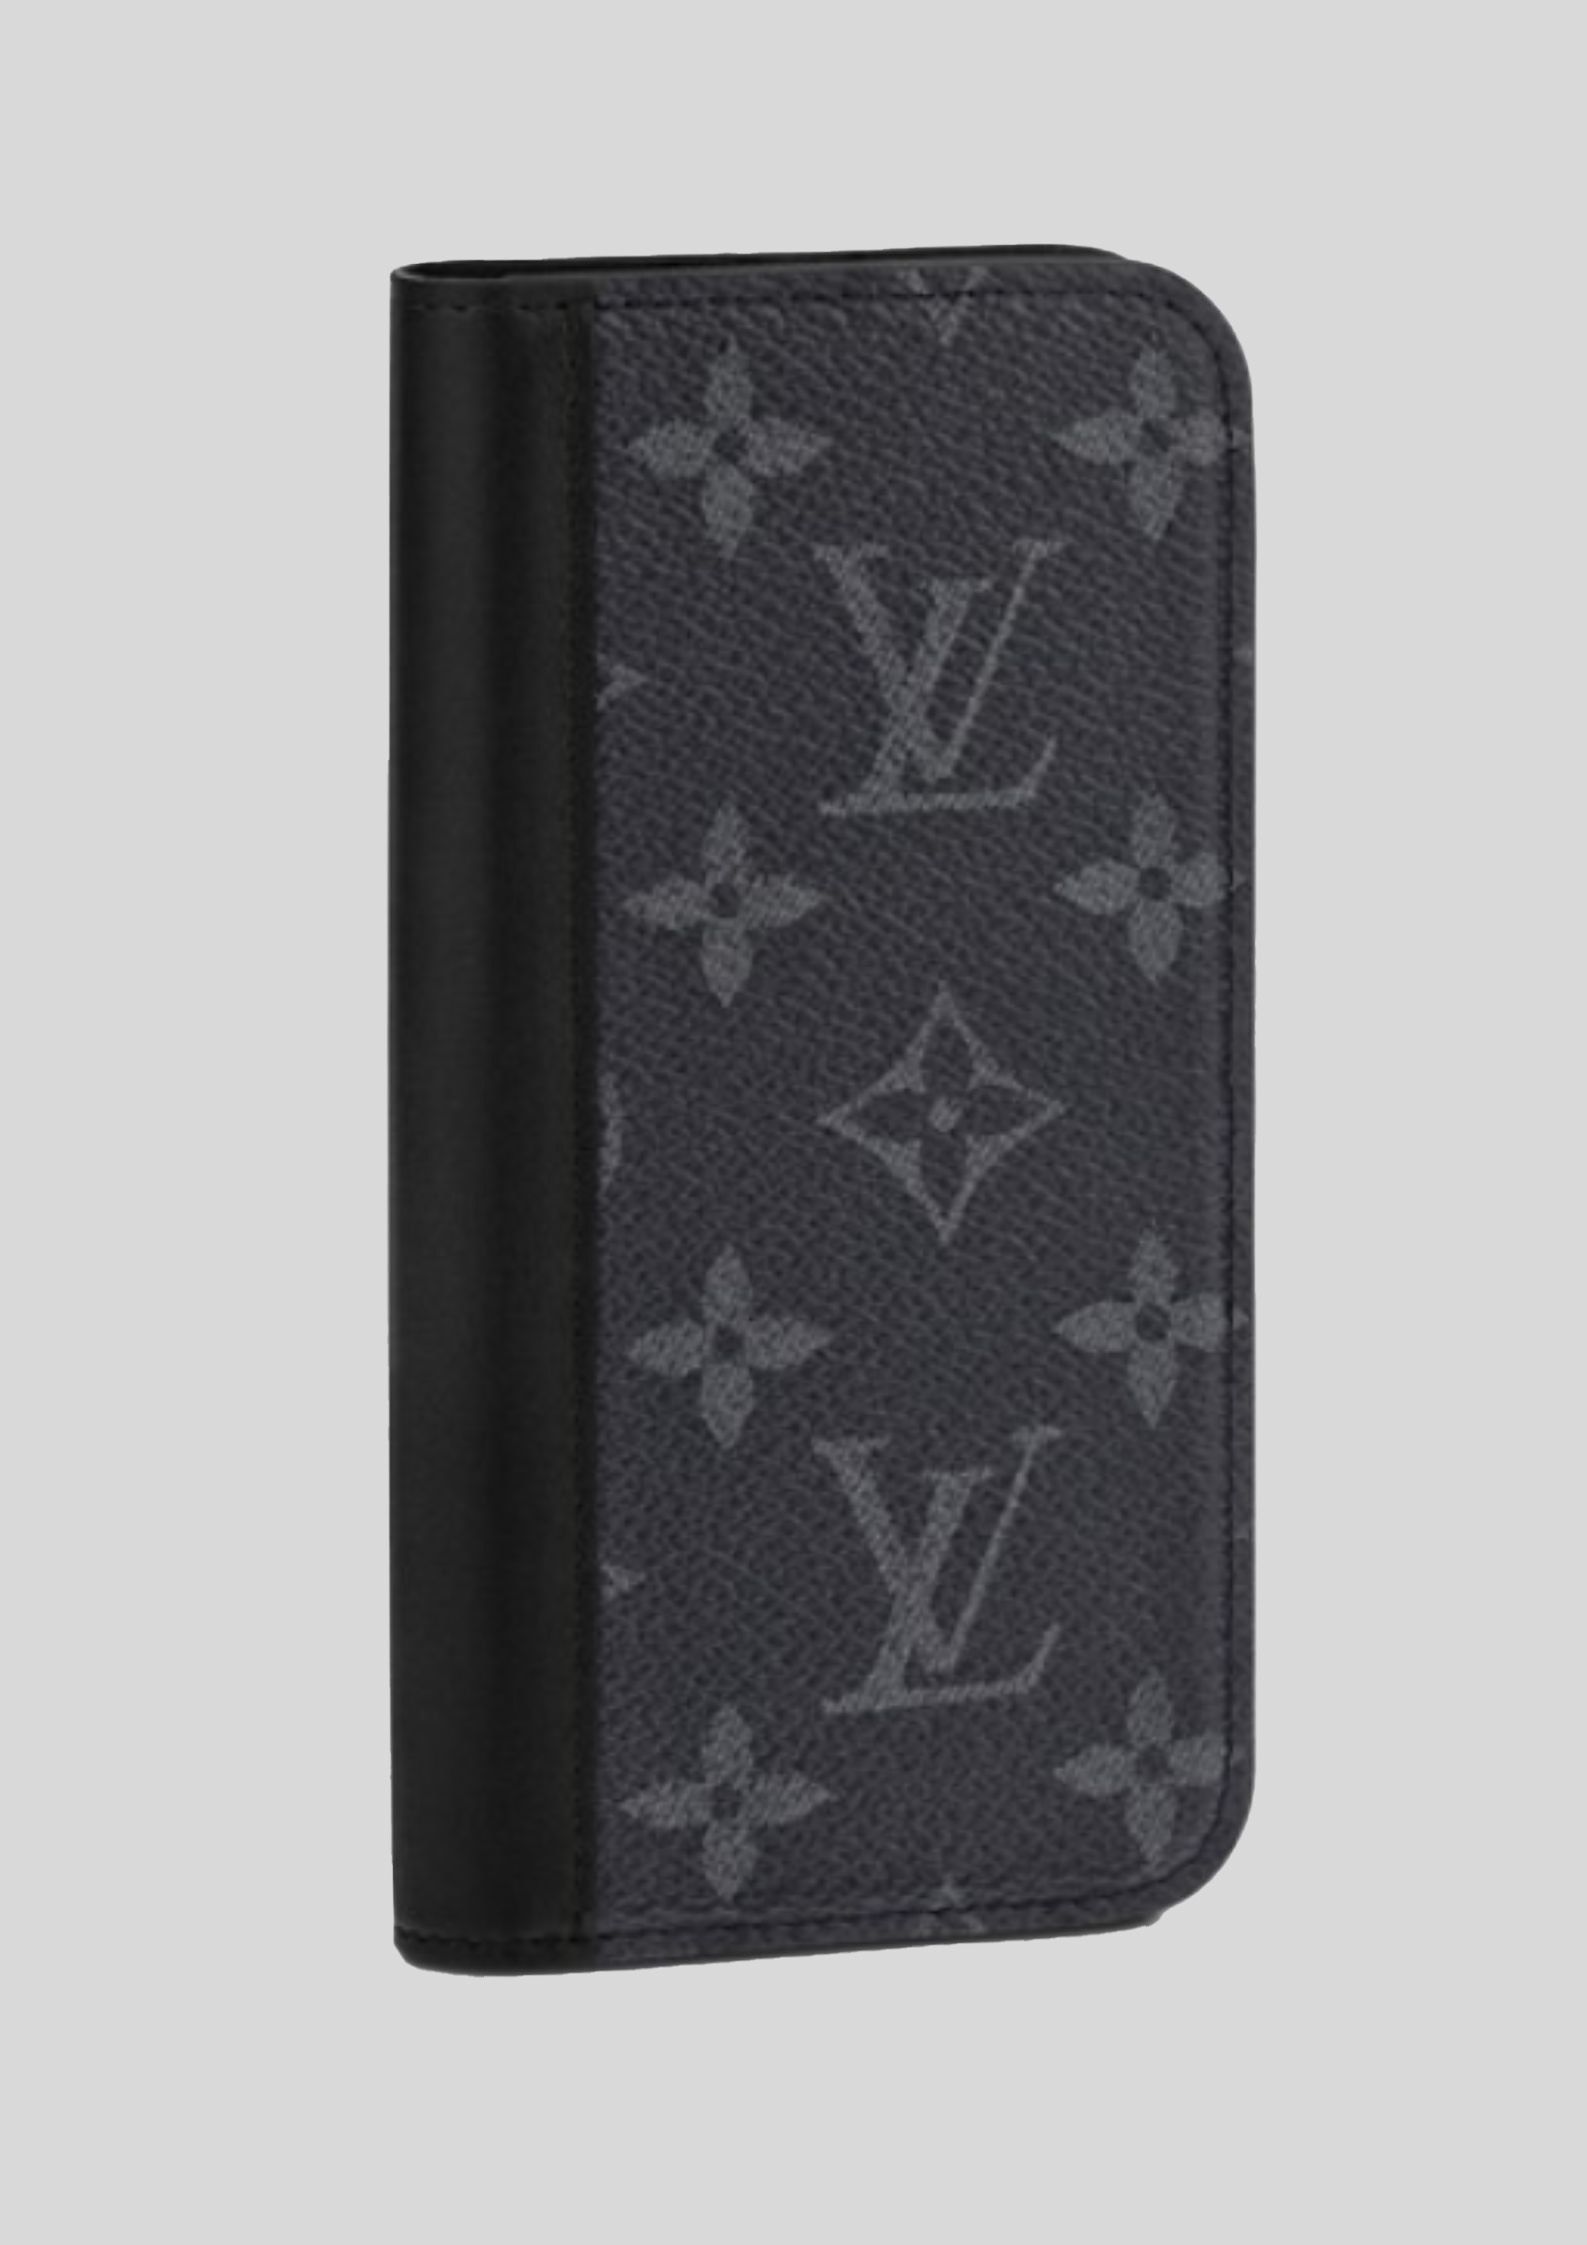 Louis Vuitton - iPhone X Folio